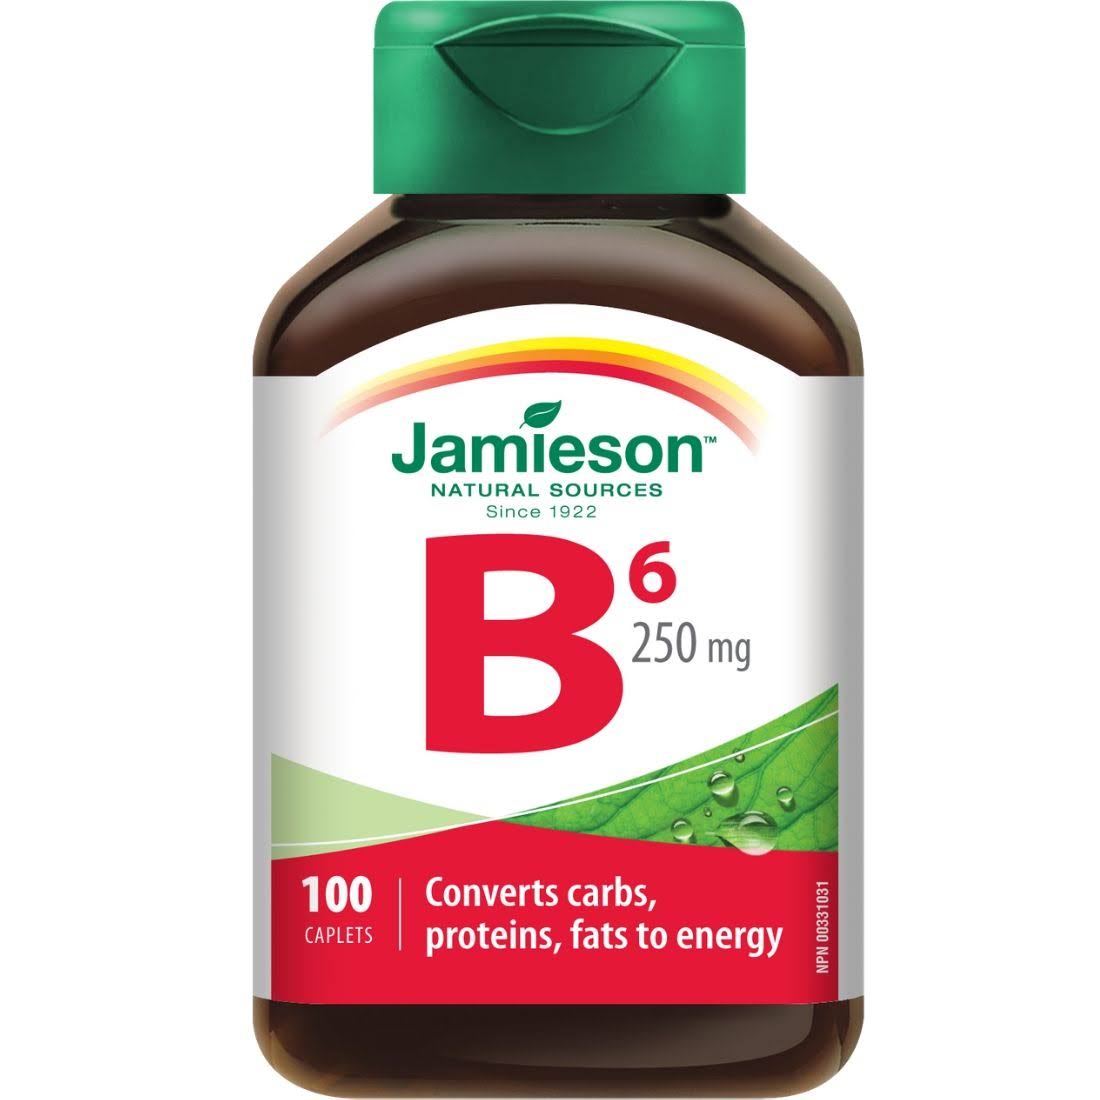 Jamieson Vitamin B6 250mg Caplets - x100